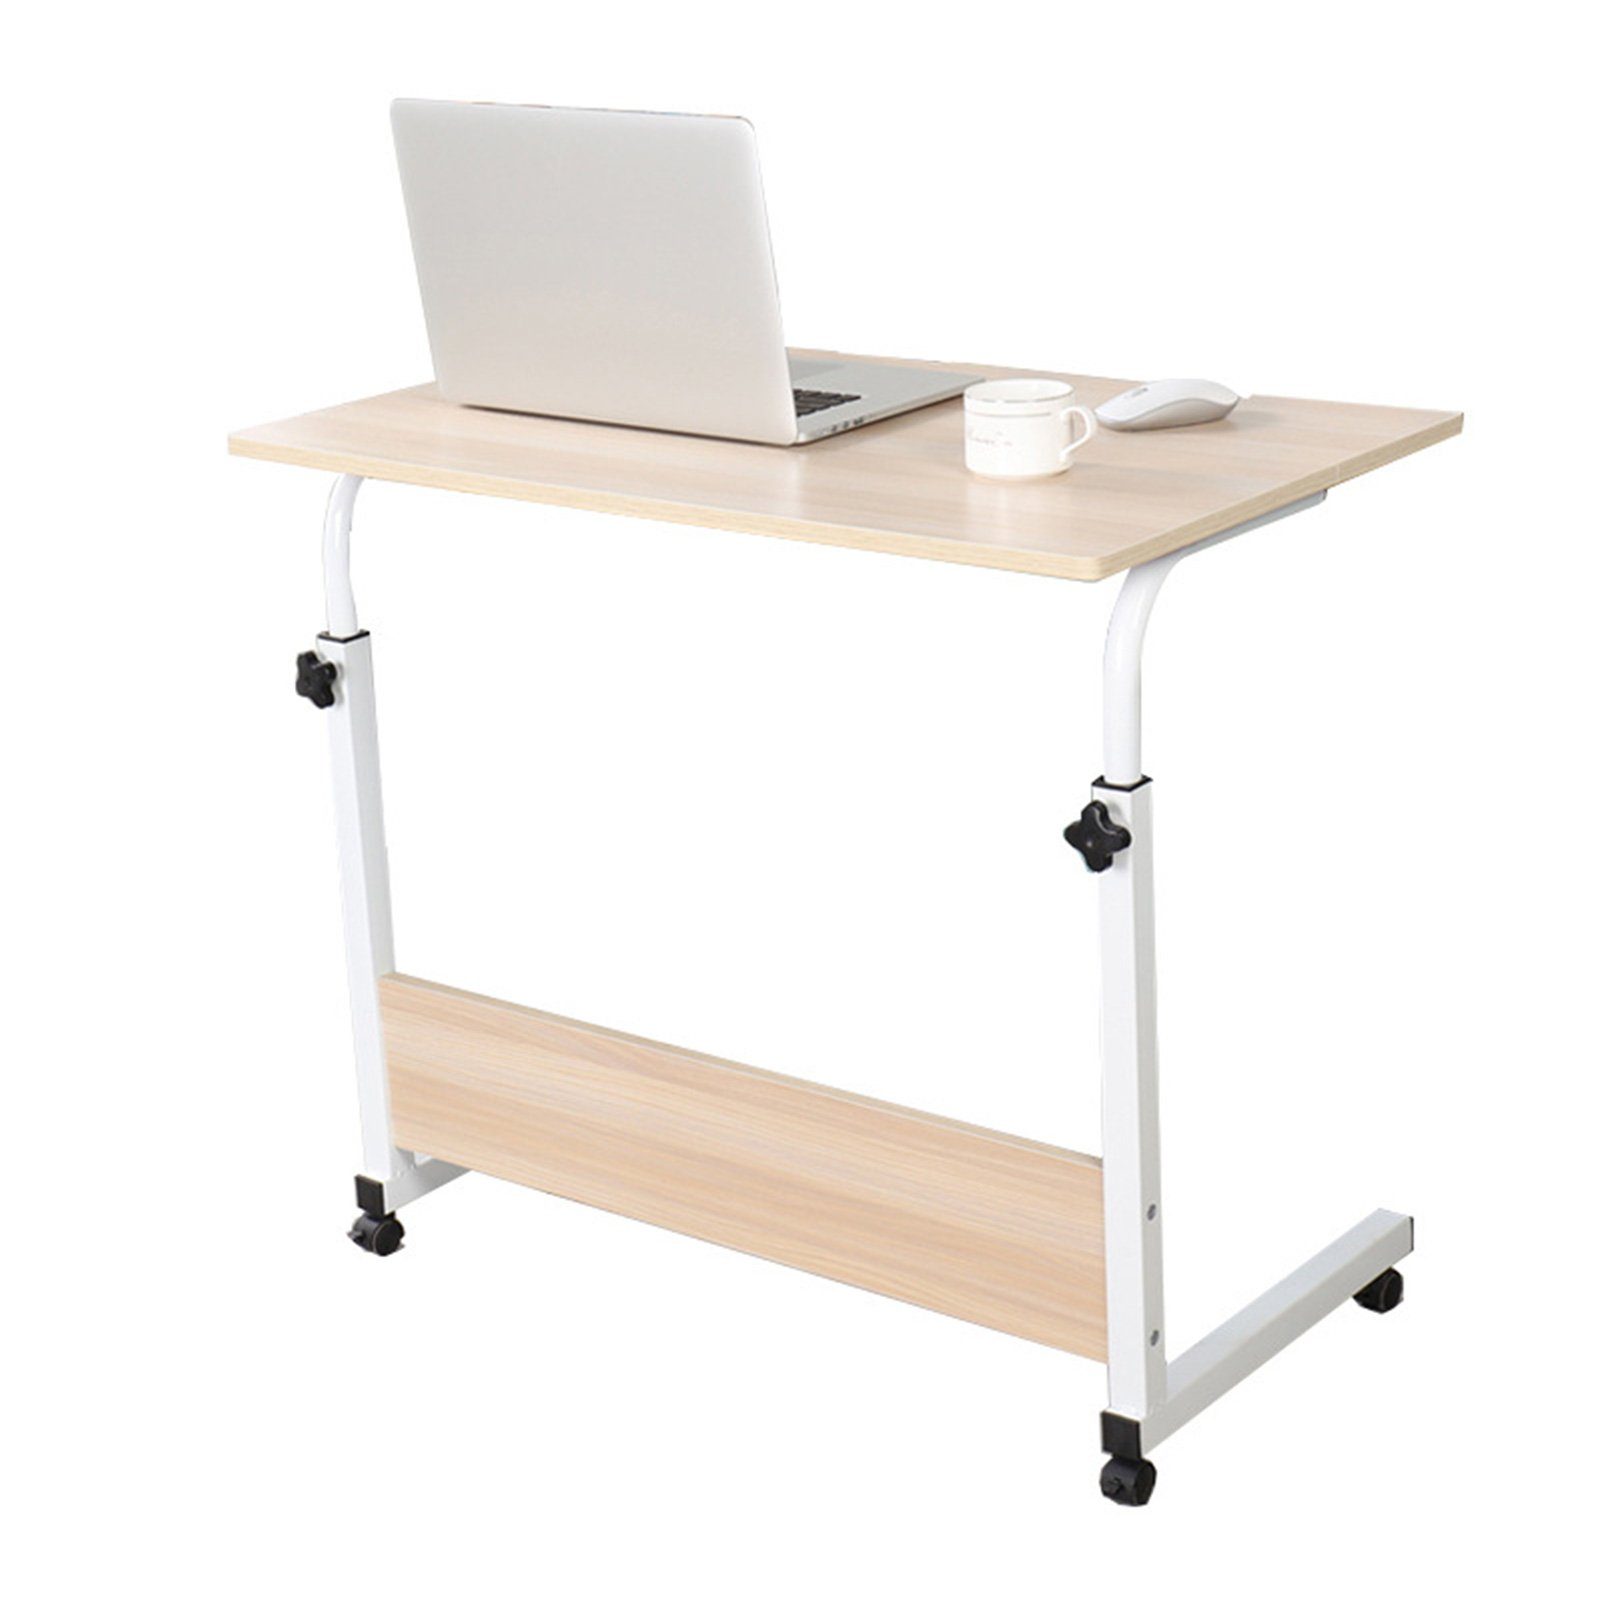 TWSOUL Laptoptisch Laptoptisch höhenverstellbarer Schreibtisch mit drehbarer Rollen